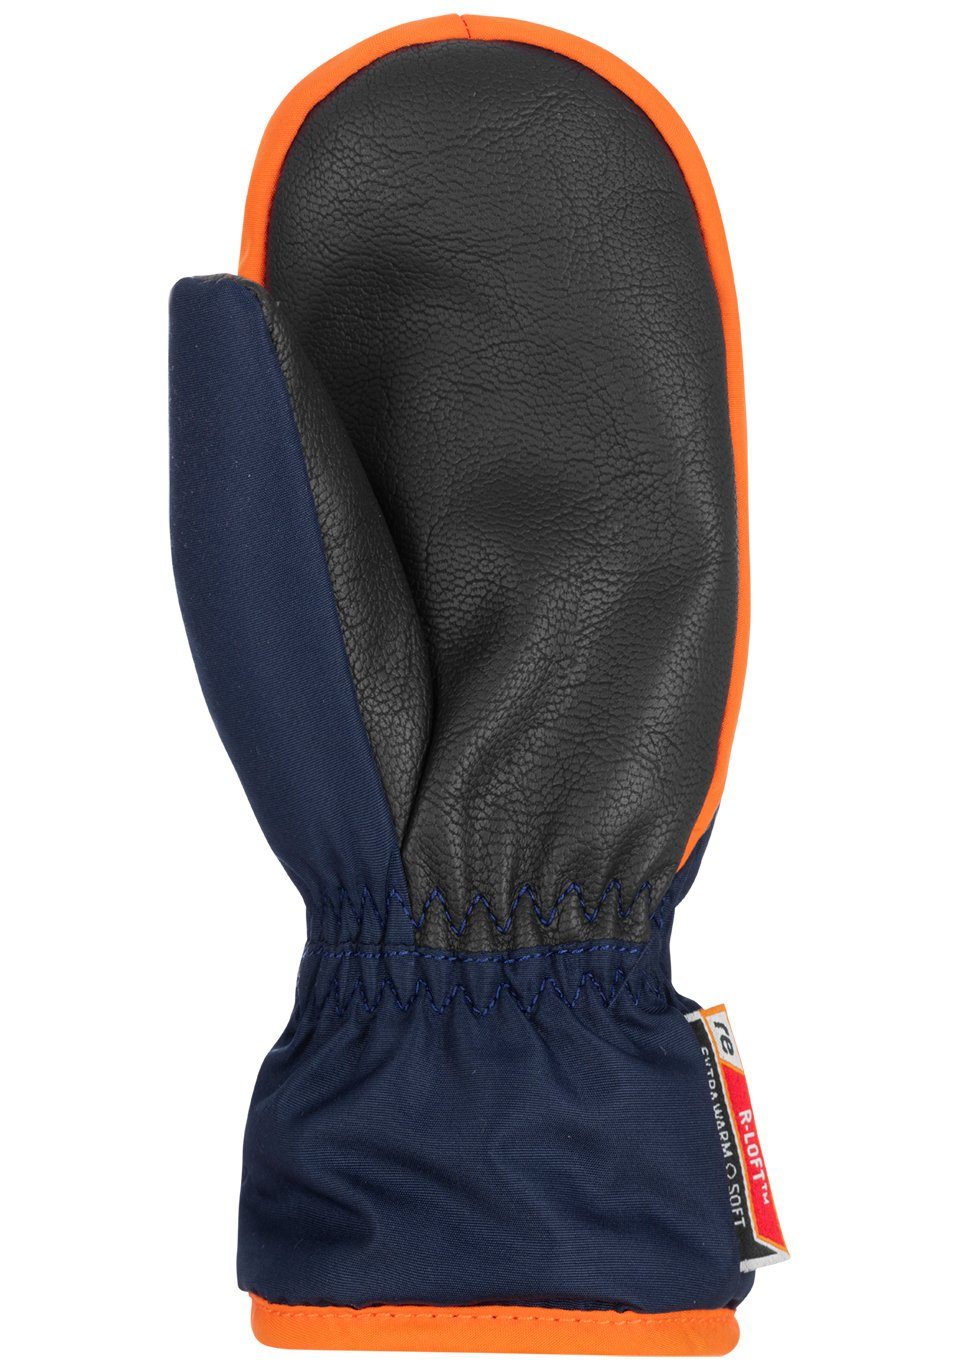 Reusch Fäustlinge Ben Mitten mit praktischem Reißverschluss orange-blau